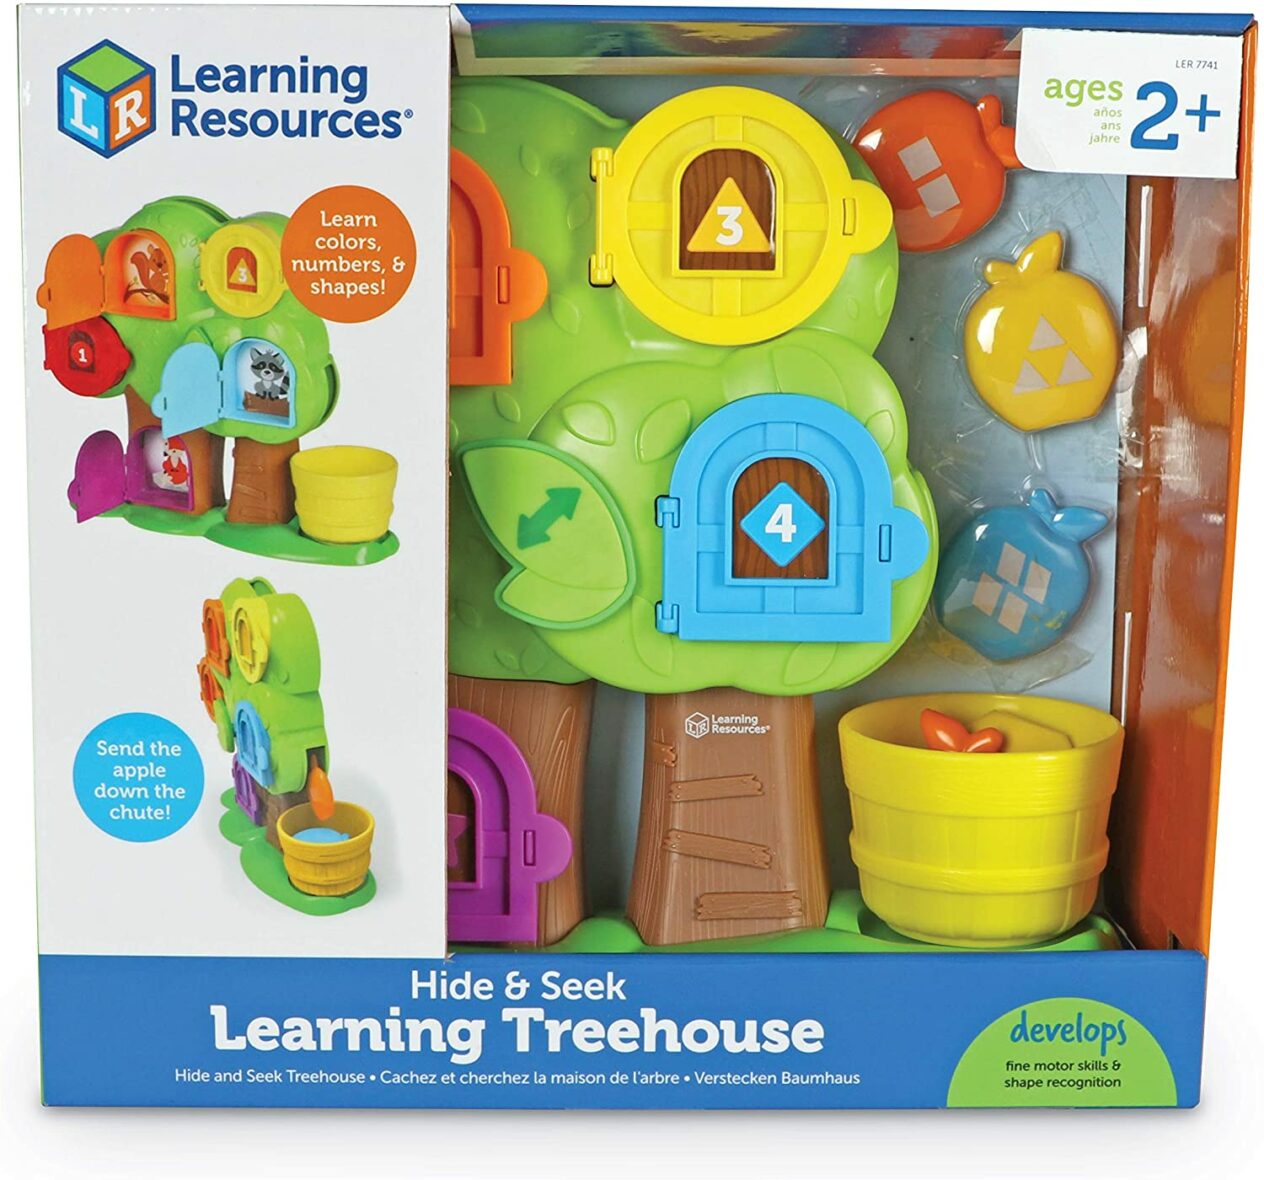 Hide & Seek Learning Treehouse